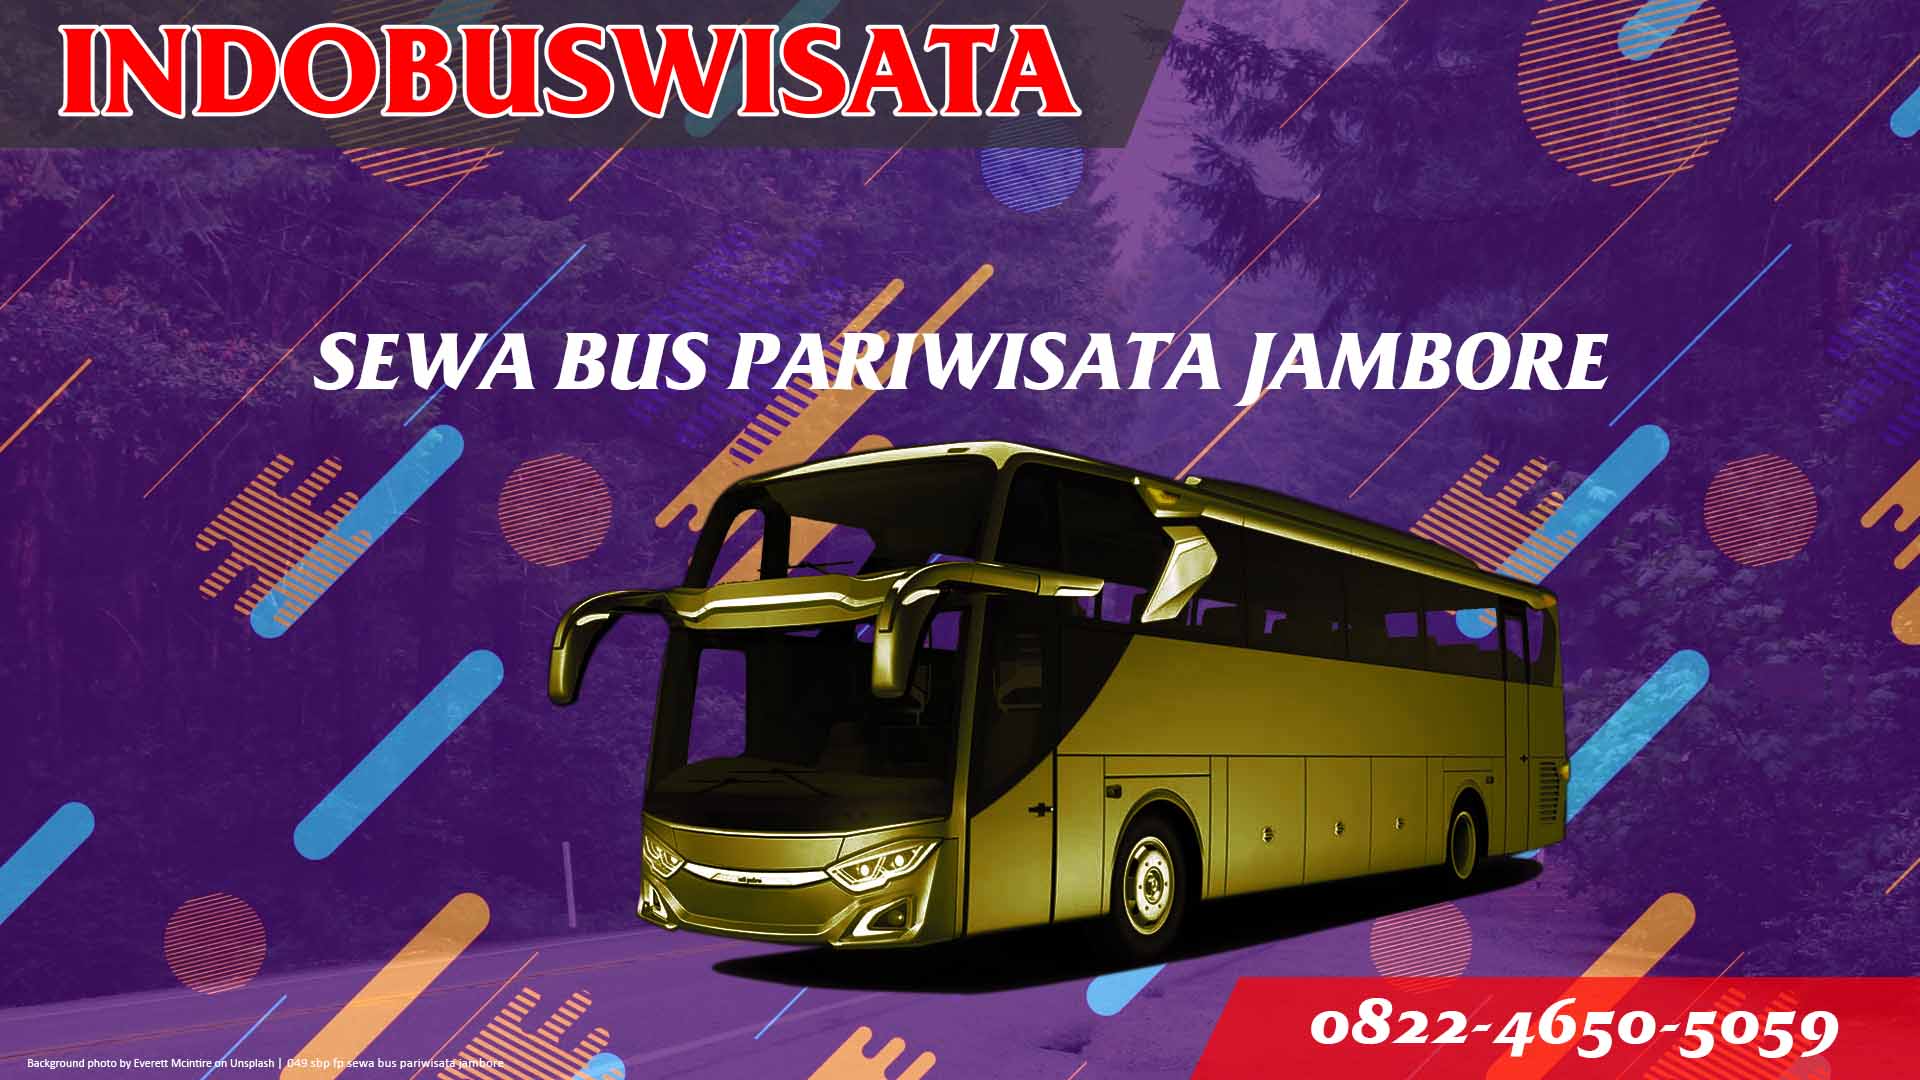 049 Sbp Fp Sewa Bus Pariwisata Jambore Indobuswisata